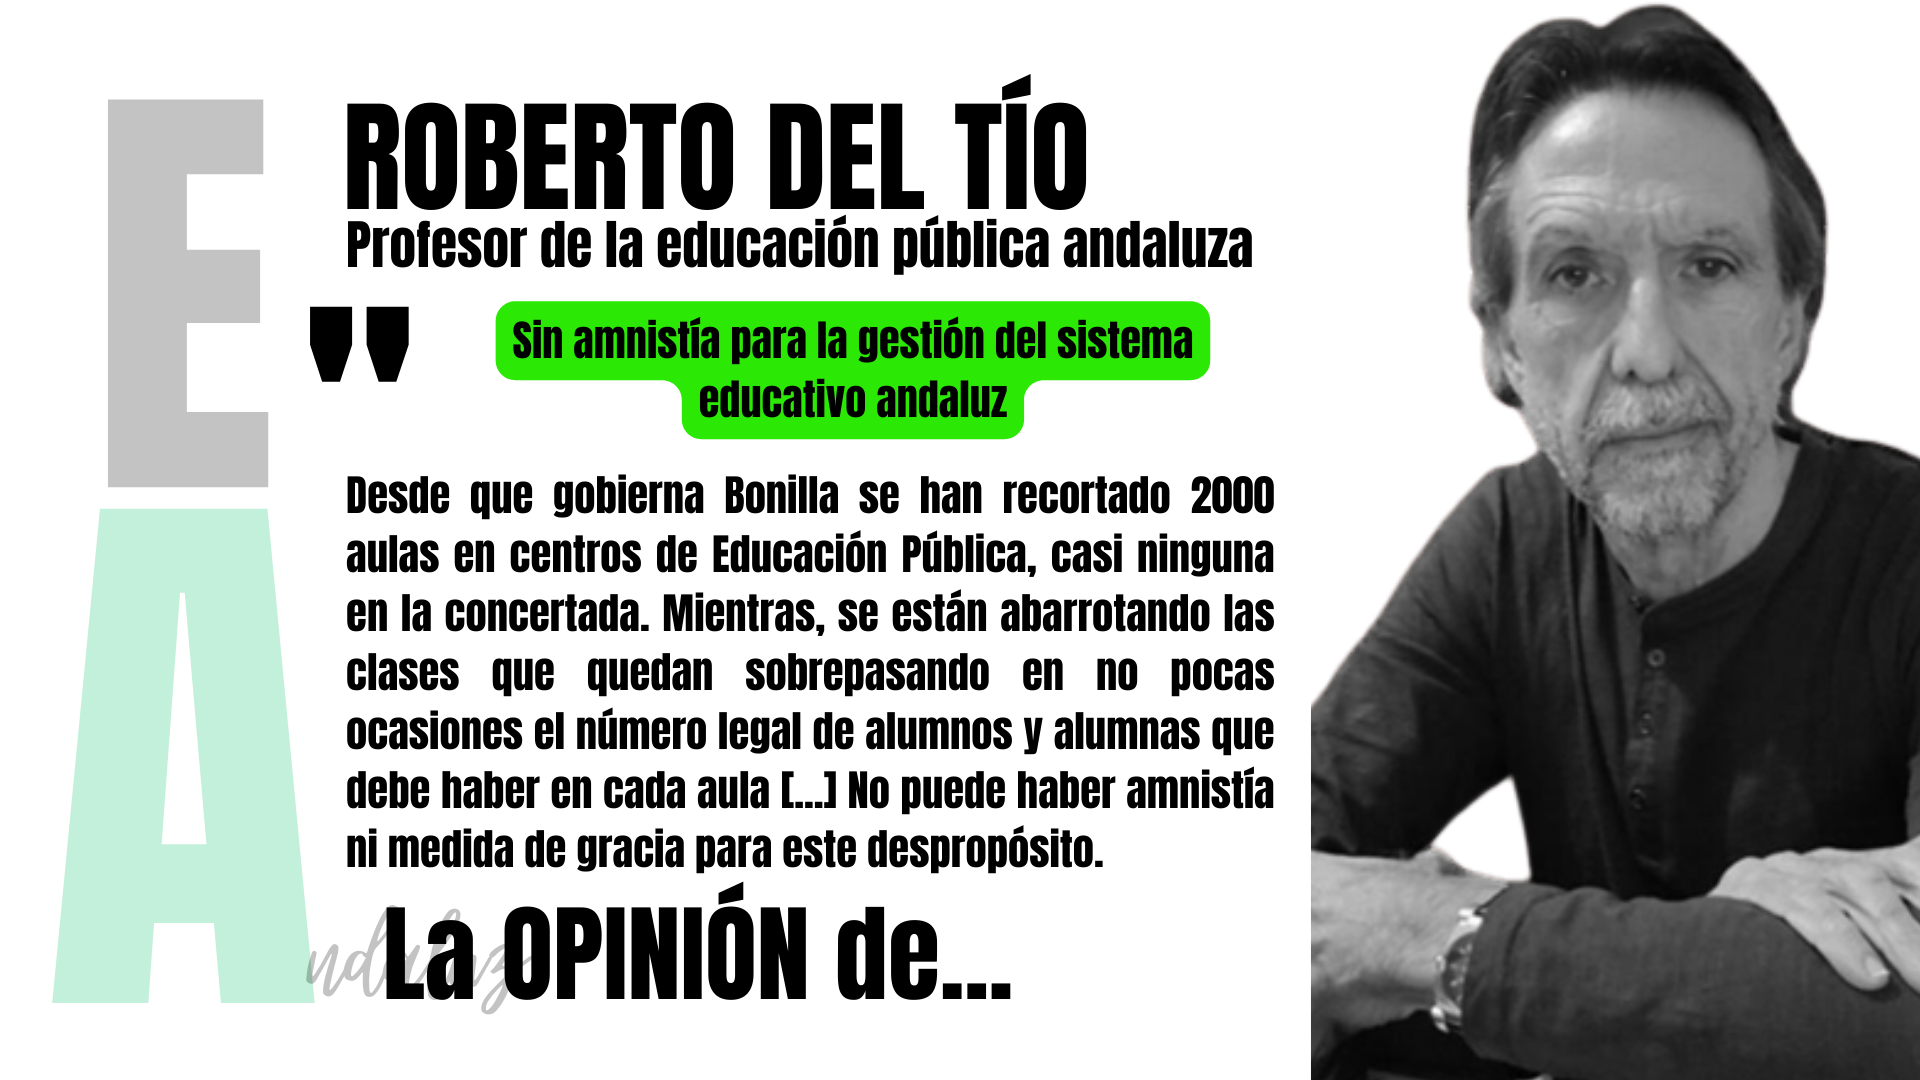 Artículo de opinión de Roberto del Tío, profesor de la educación pública andaluza